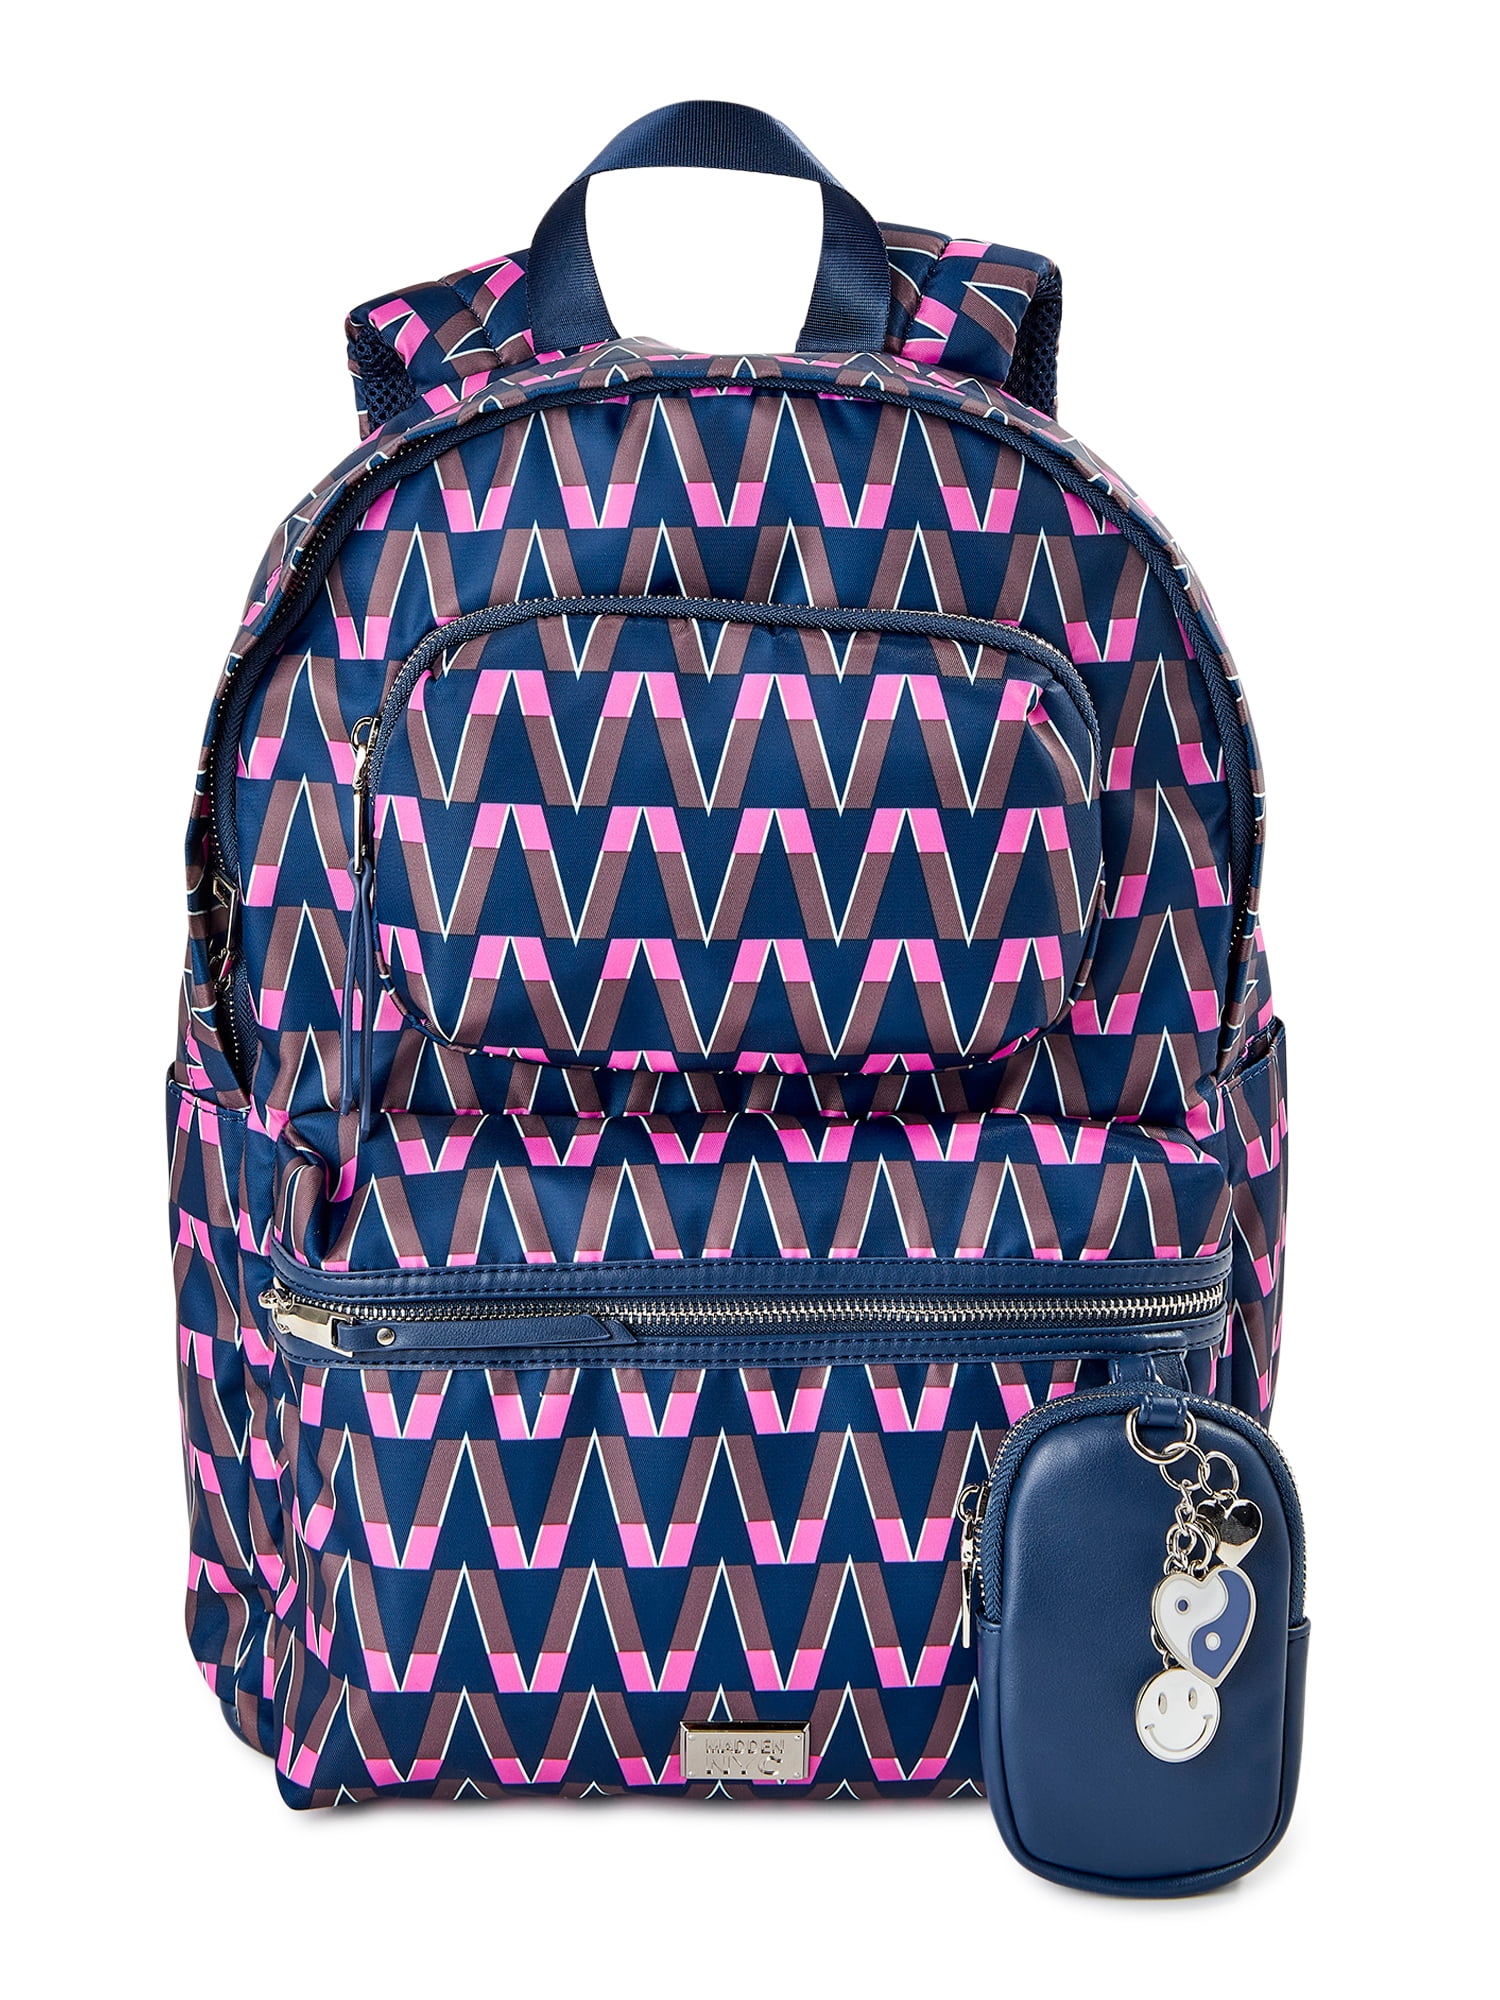 Madden NYC Girls Modular Zipper Backpack Mod Chevron - Walmart.com